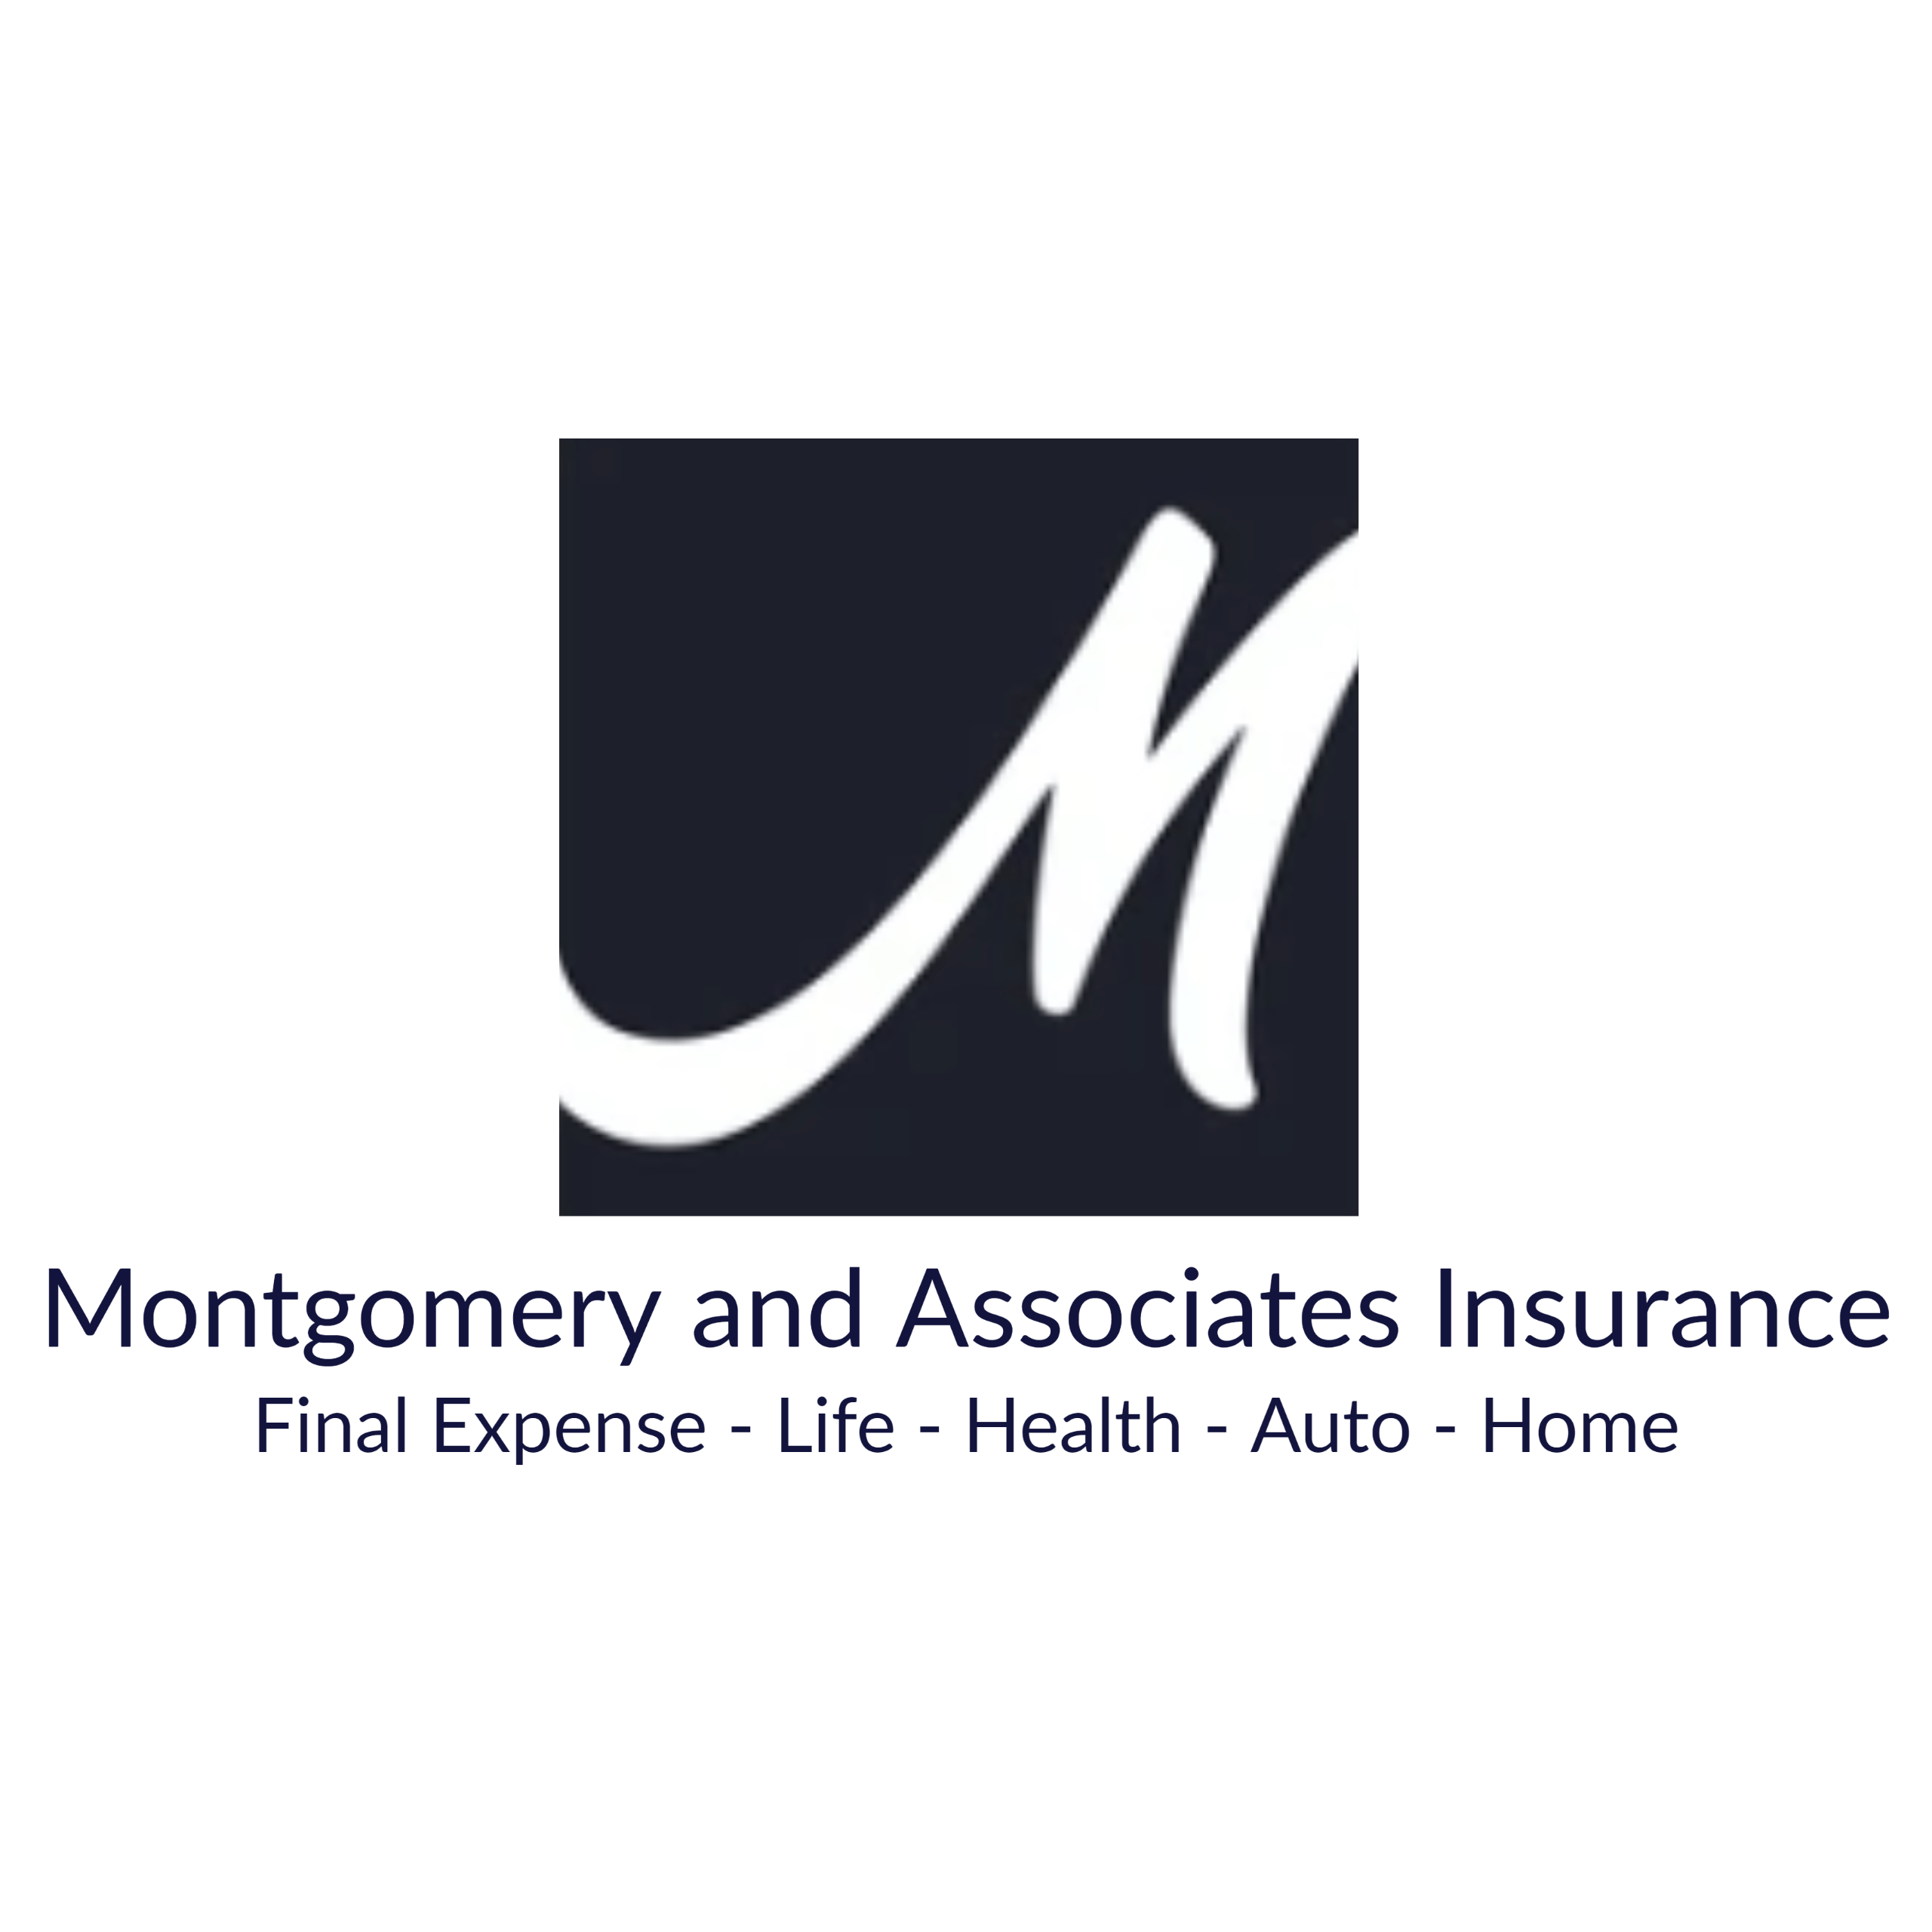 Montgomery and Associates Logo 1 transparent